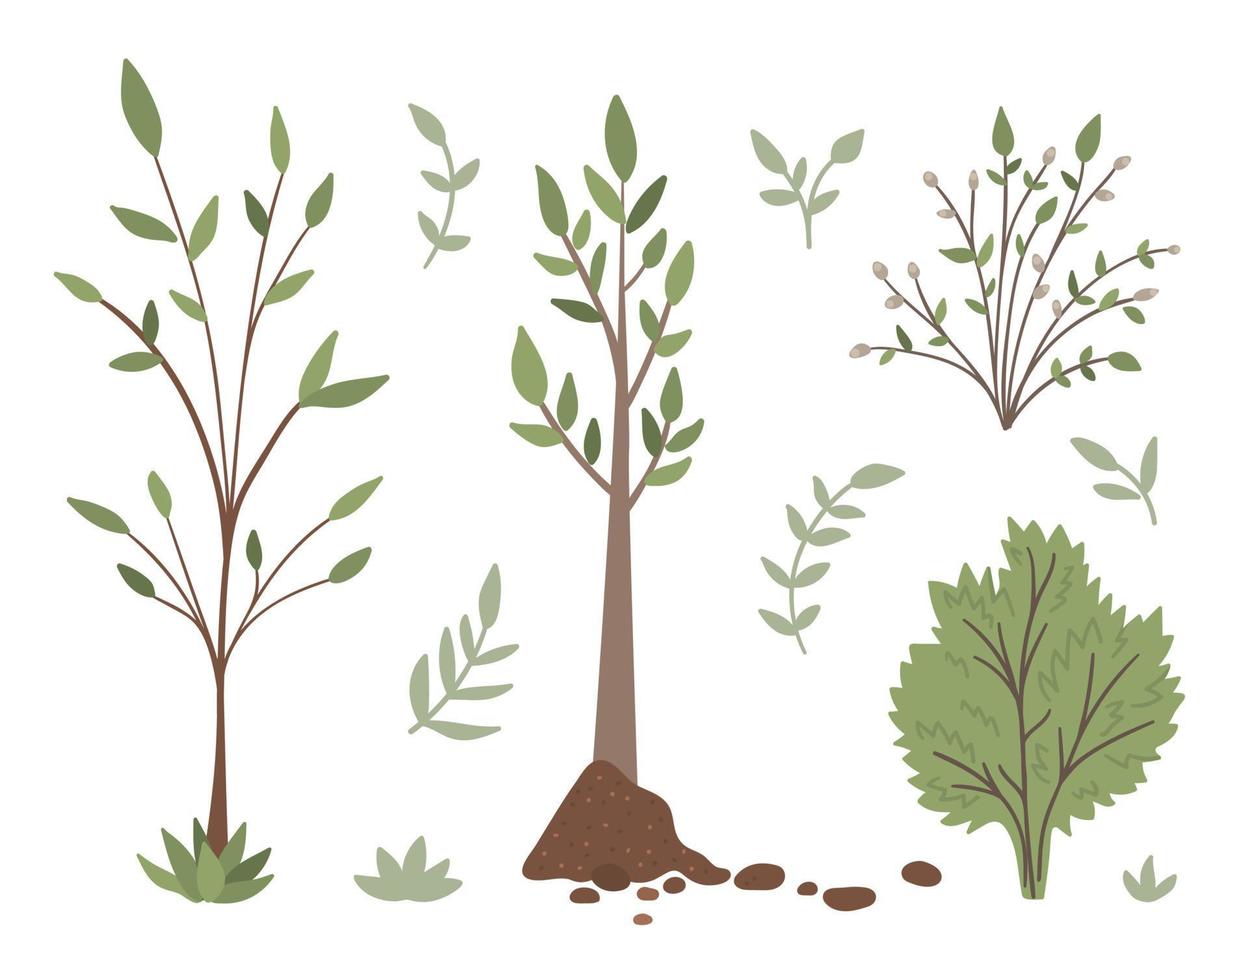 ensemble vectoriel d'arbres, plantes, arbustes, buissons, brindilles isolés sur fond blanc. illustration de jardin de printemps plat. collection d'icônes de jardinage ou de forêt